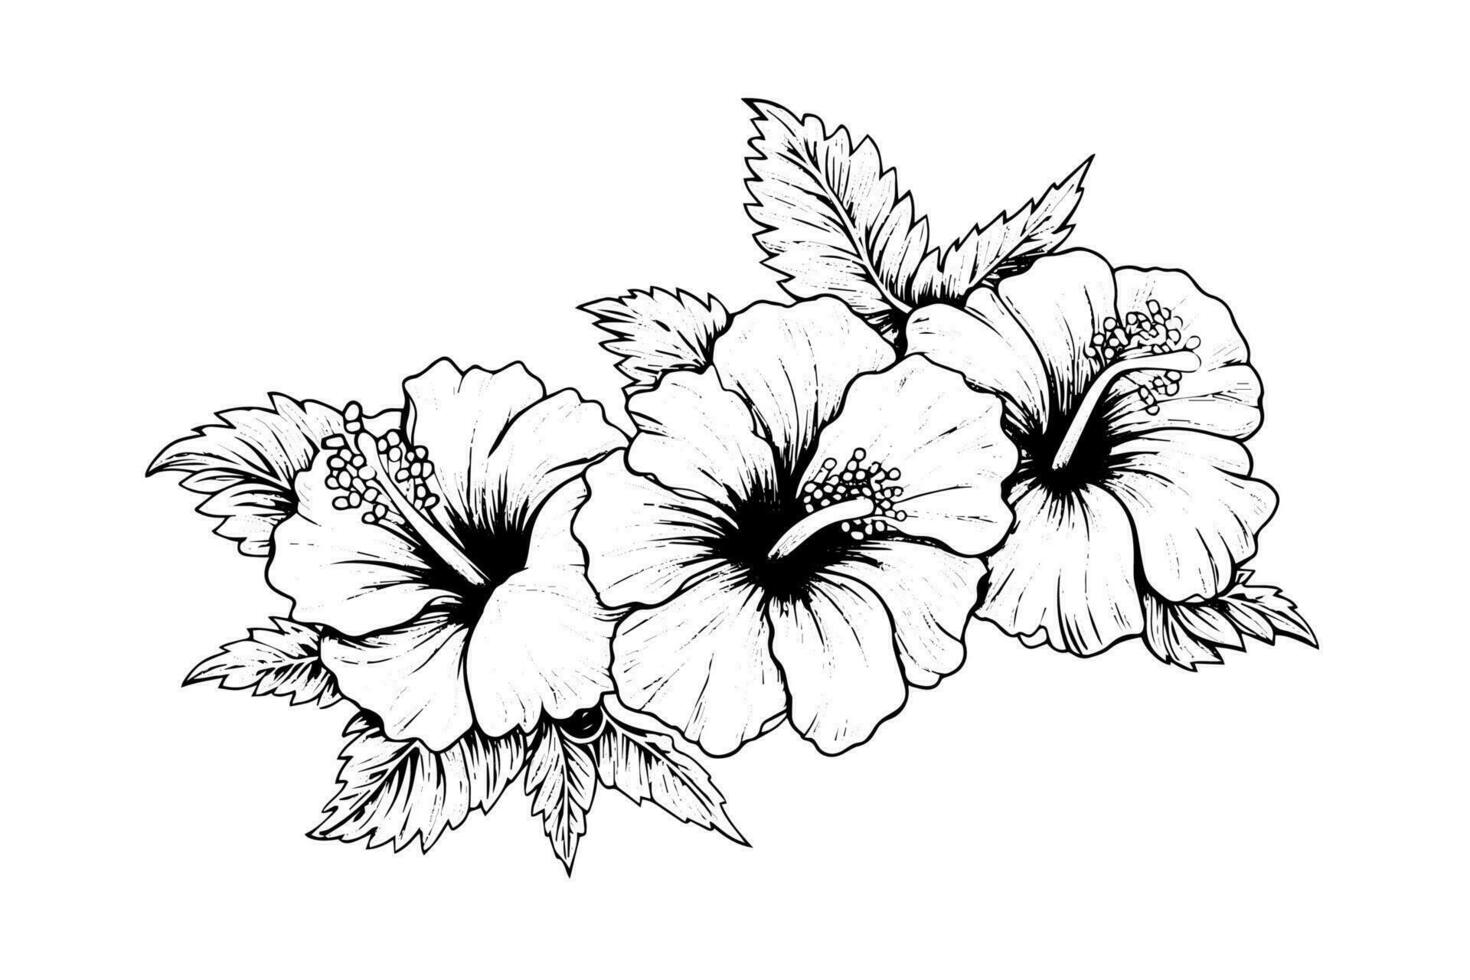 hibiscus fleurs dans une ancien gravure sur bois gravé gravure style. vecteur illustration.